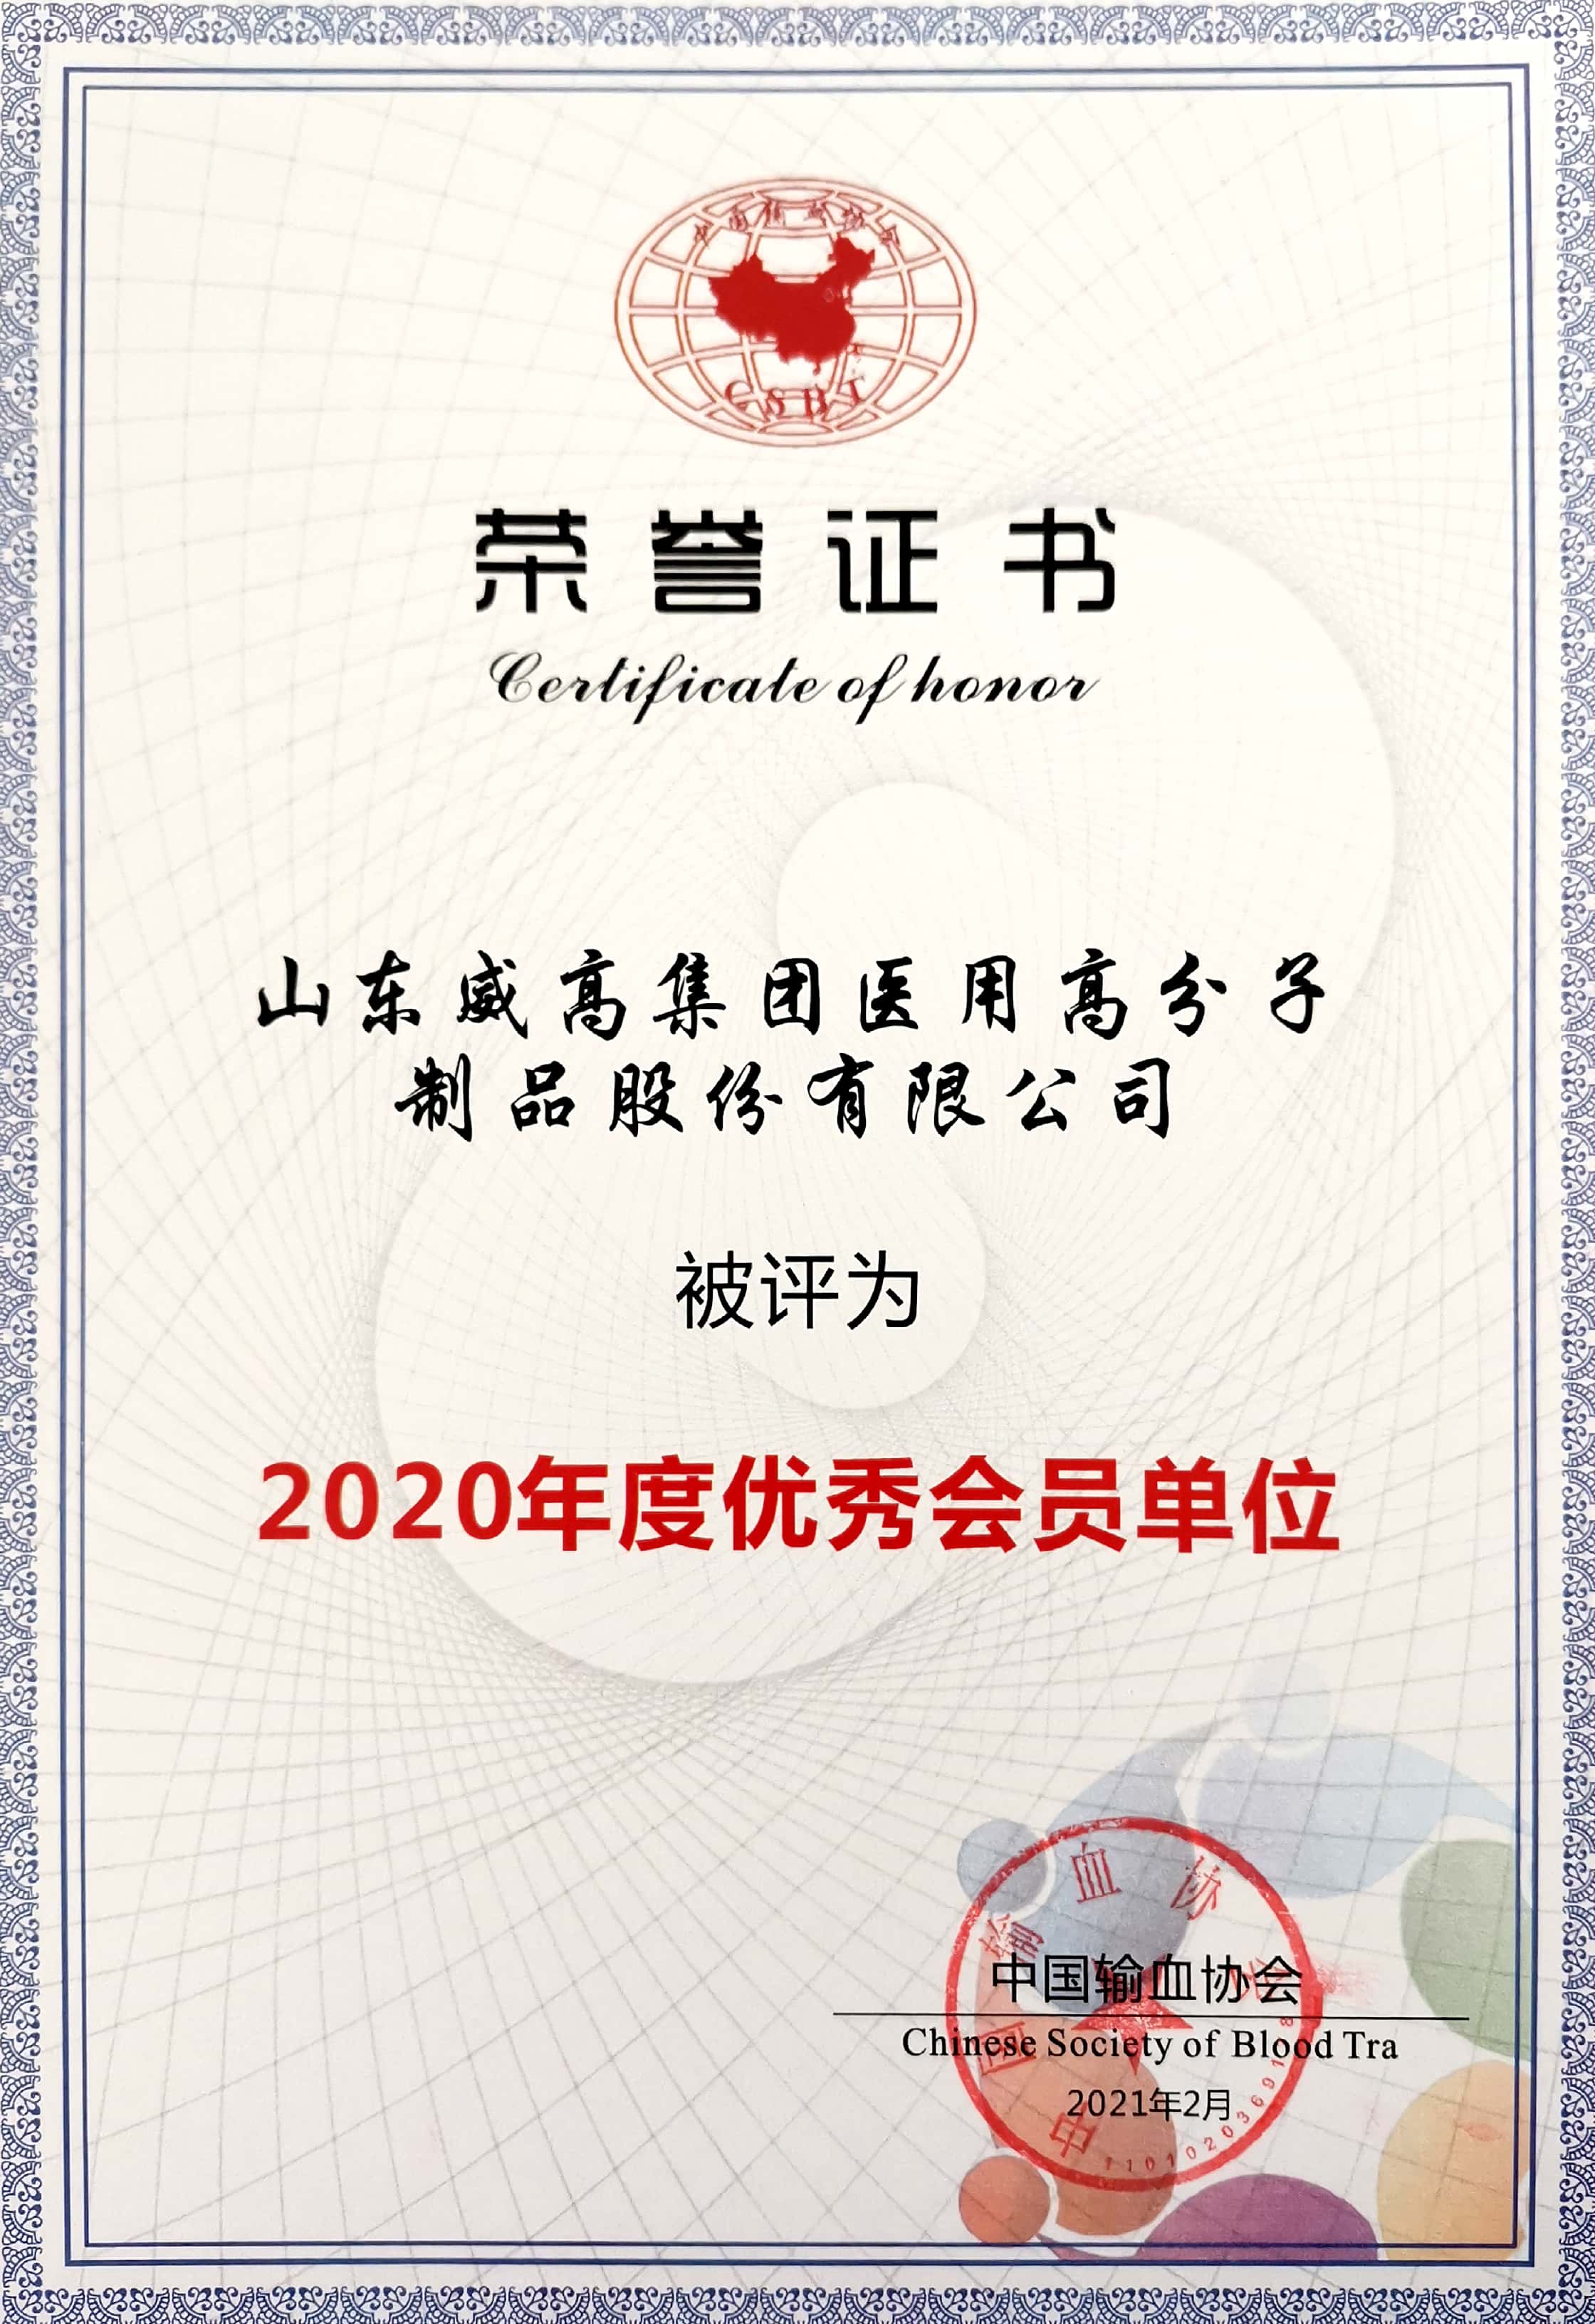 山东威高集团荣获“中国输血协会2020年度优秀会员单位”称号